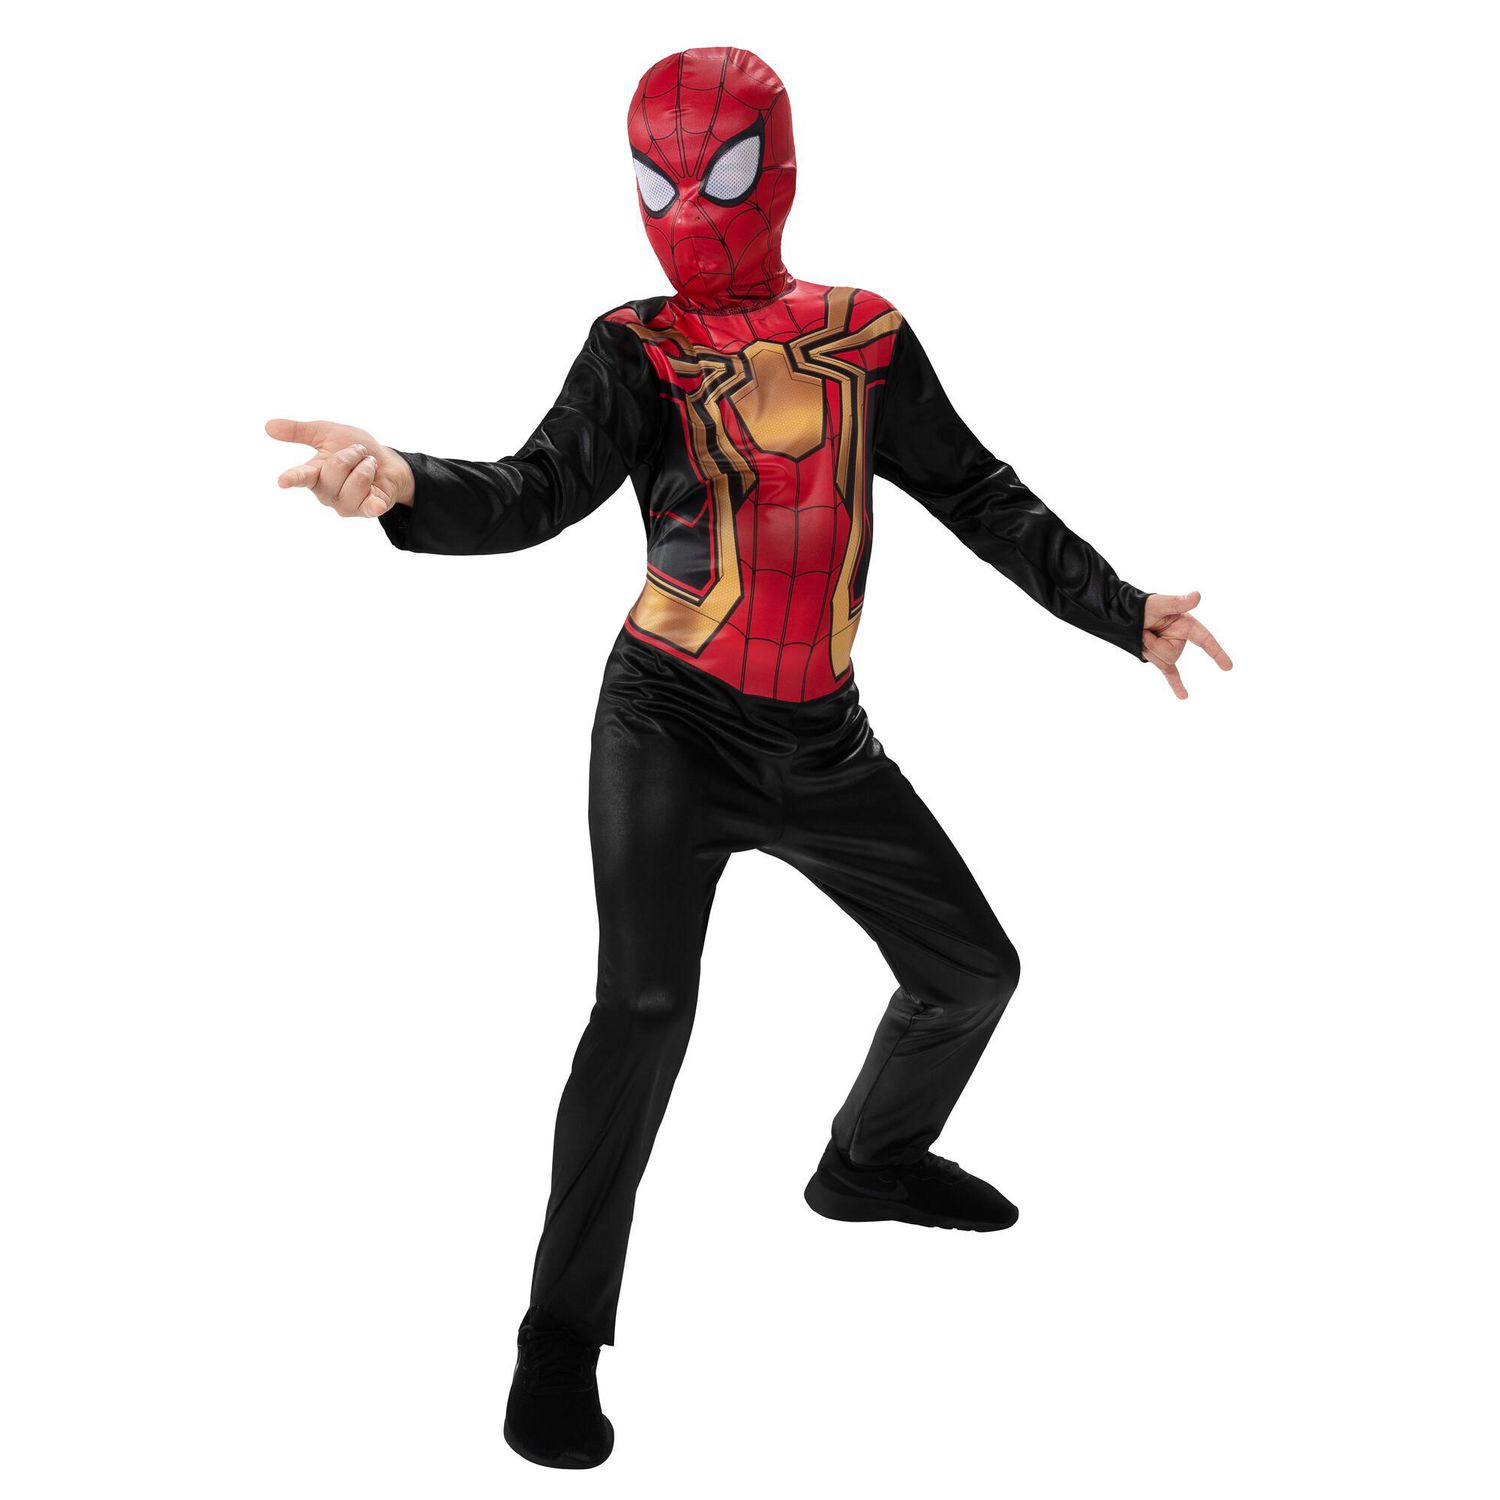 Costume de super-héros Spiderman avec masque, combinaison d